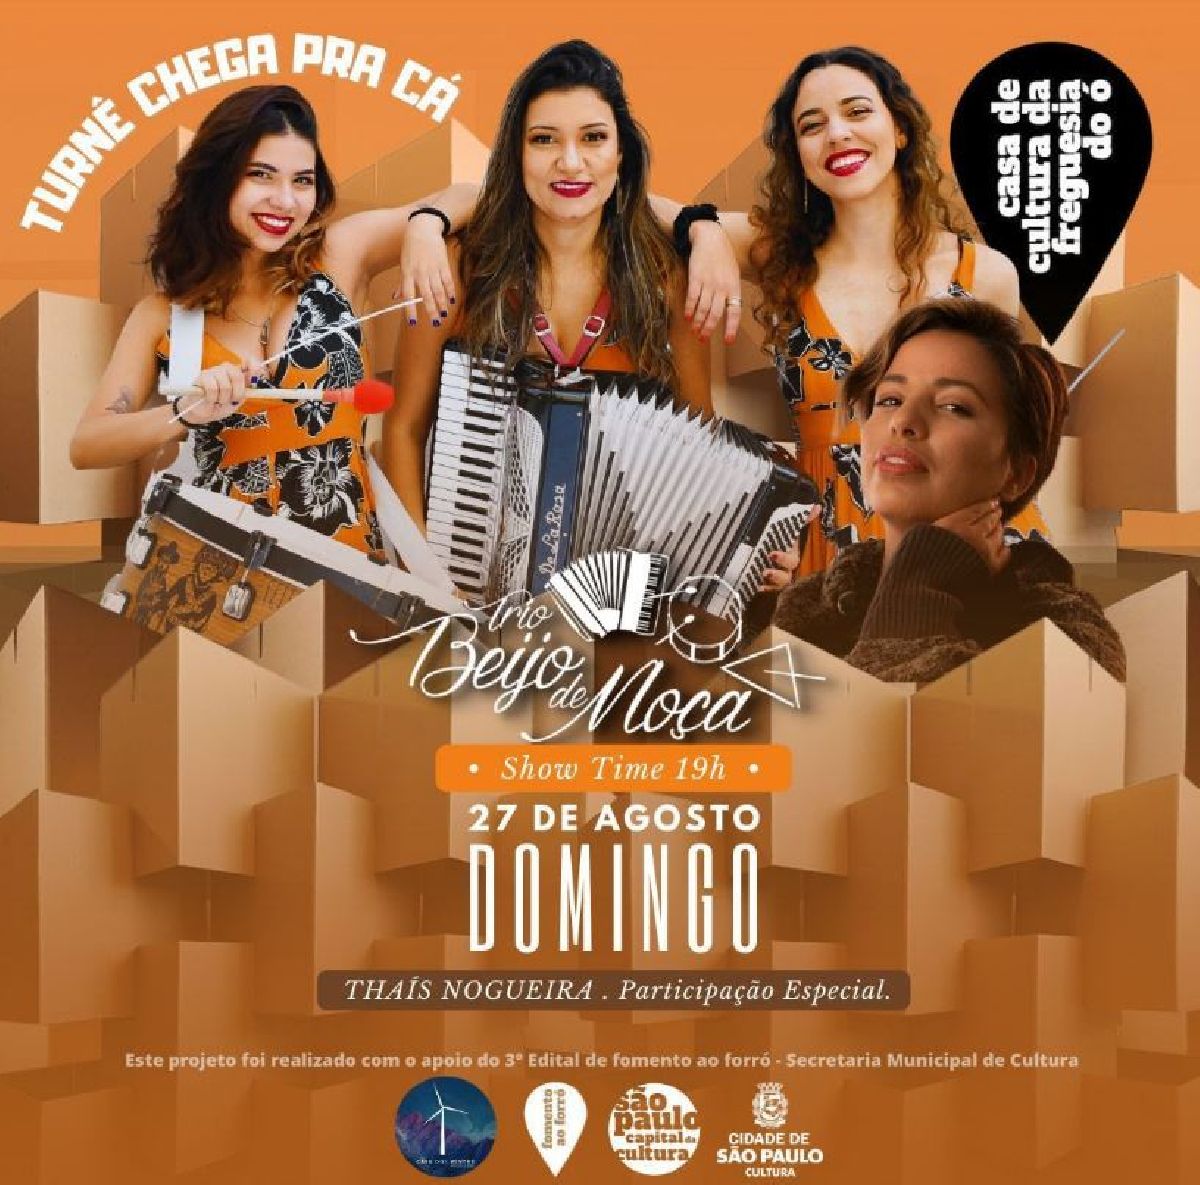 Trio Beijo de Moça apresenta o segundo show da Turnê: “Chega Pra Cá”